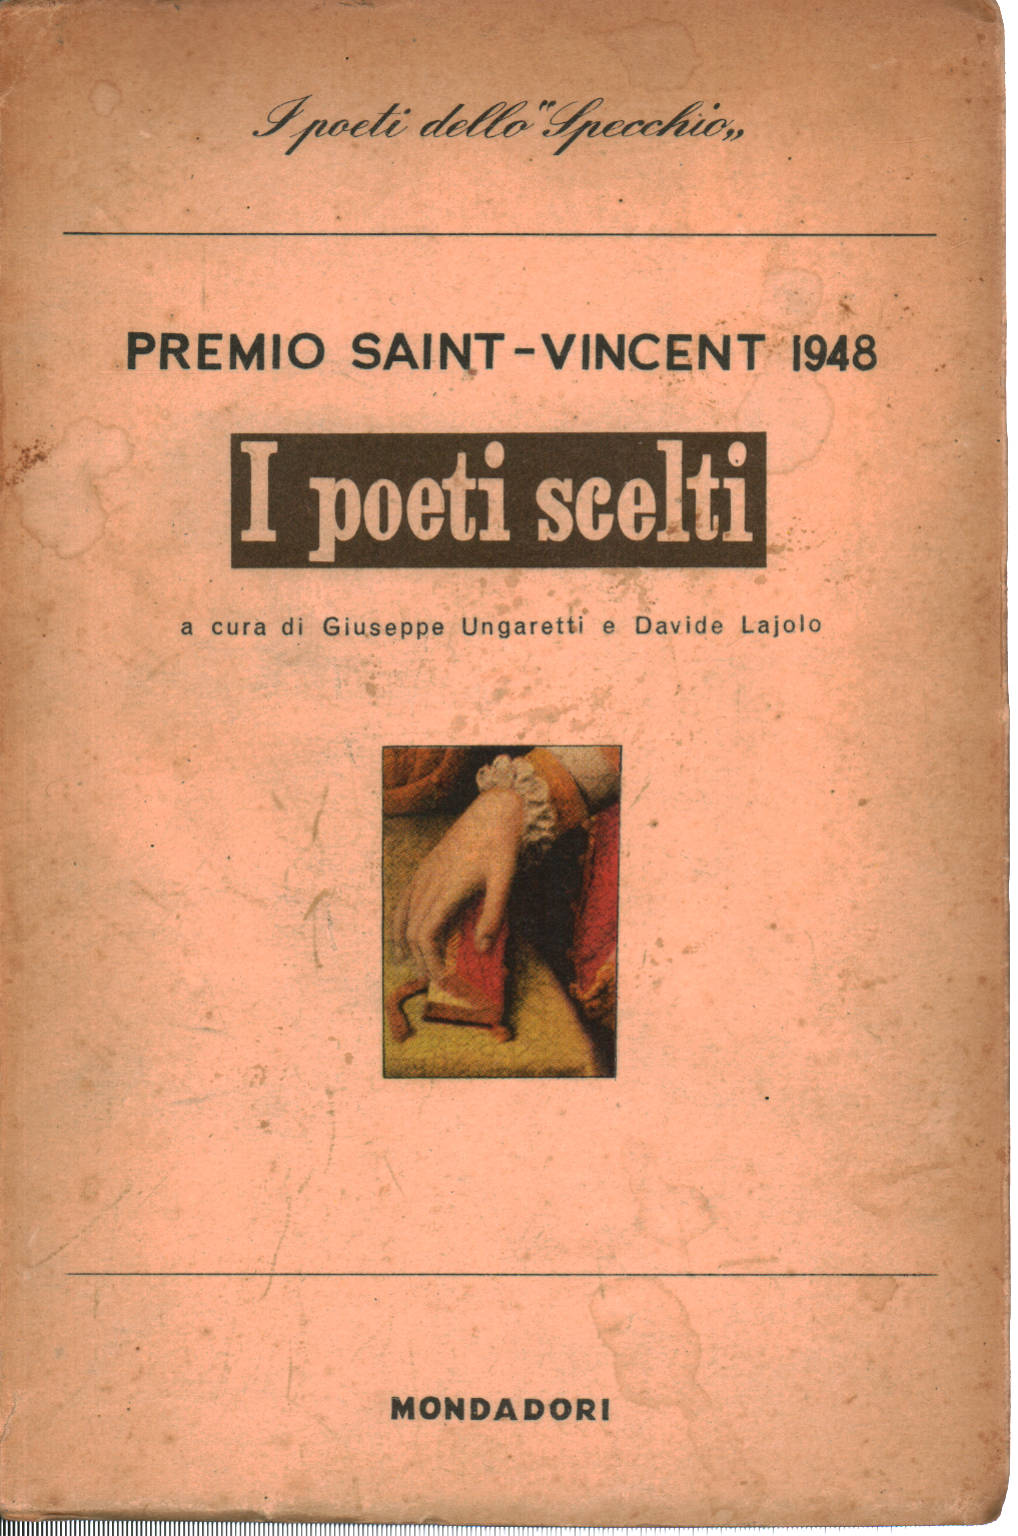 Los poetas elegidos, Giuseppe Ungaretti Davide Lajolo